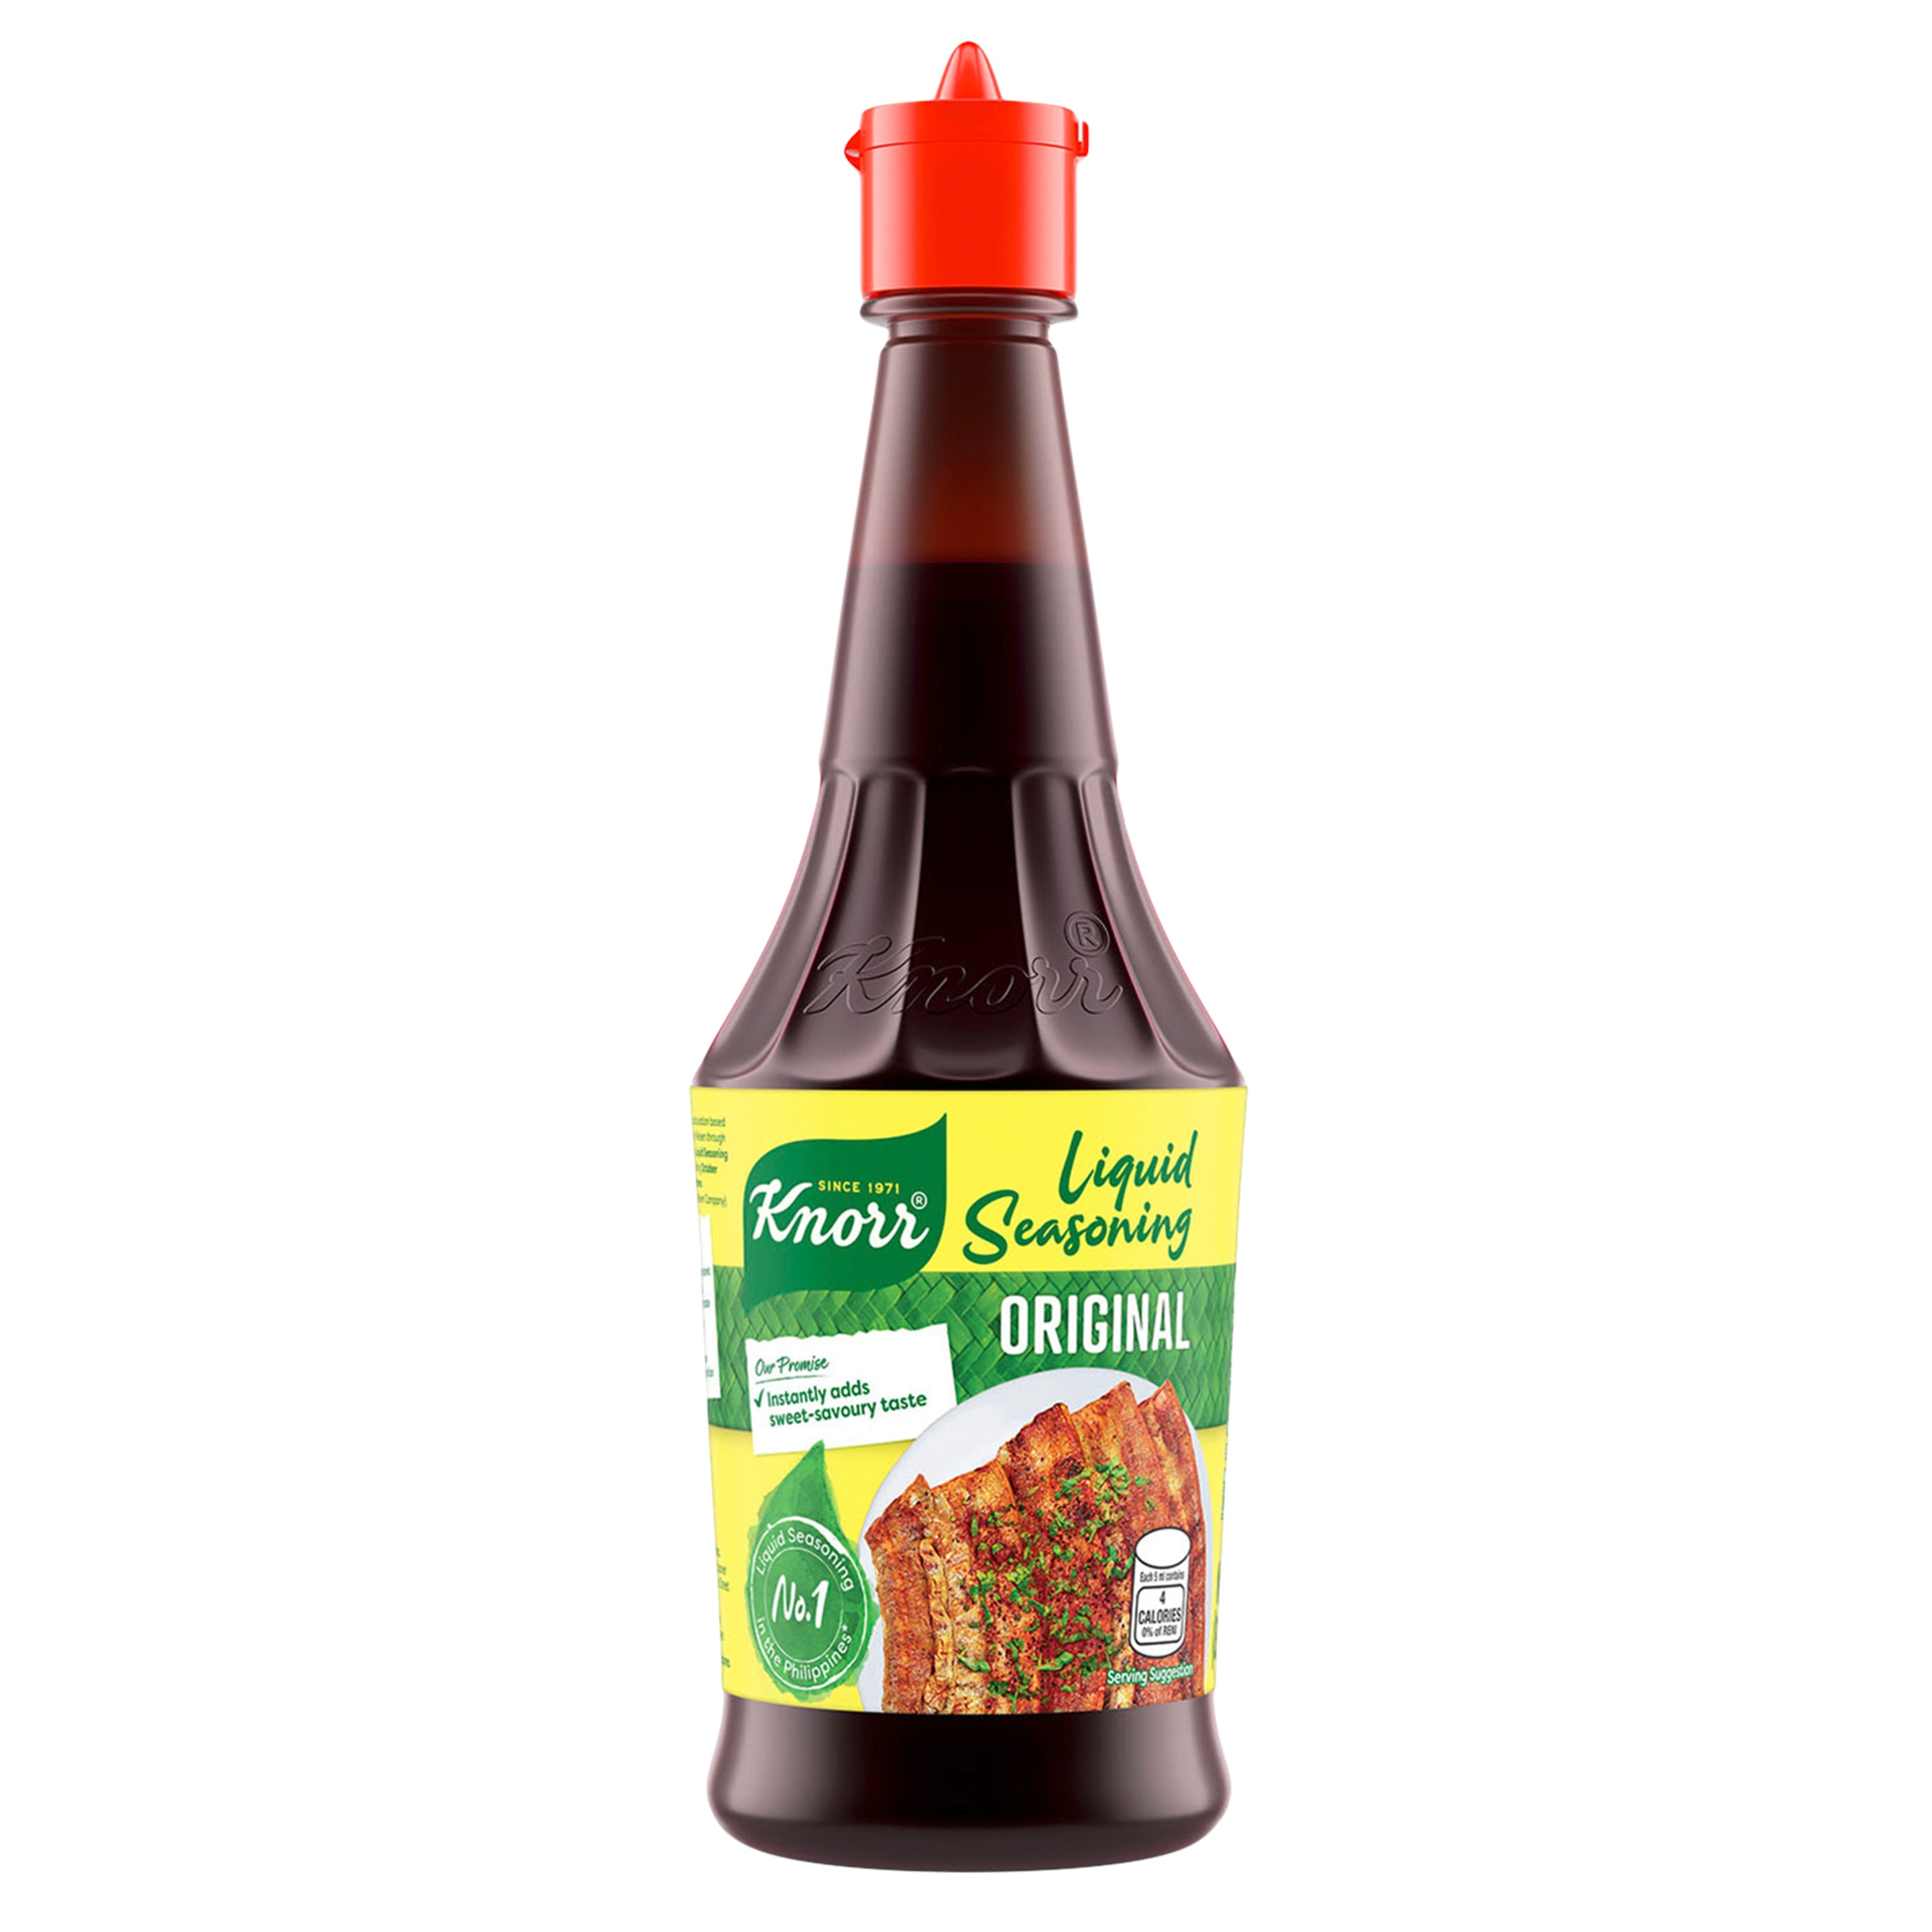 A bottle of Knorr Liquid Seasoning